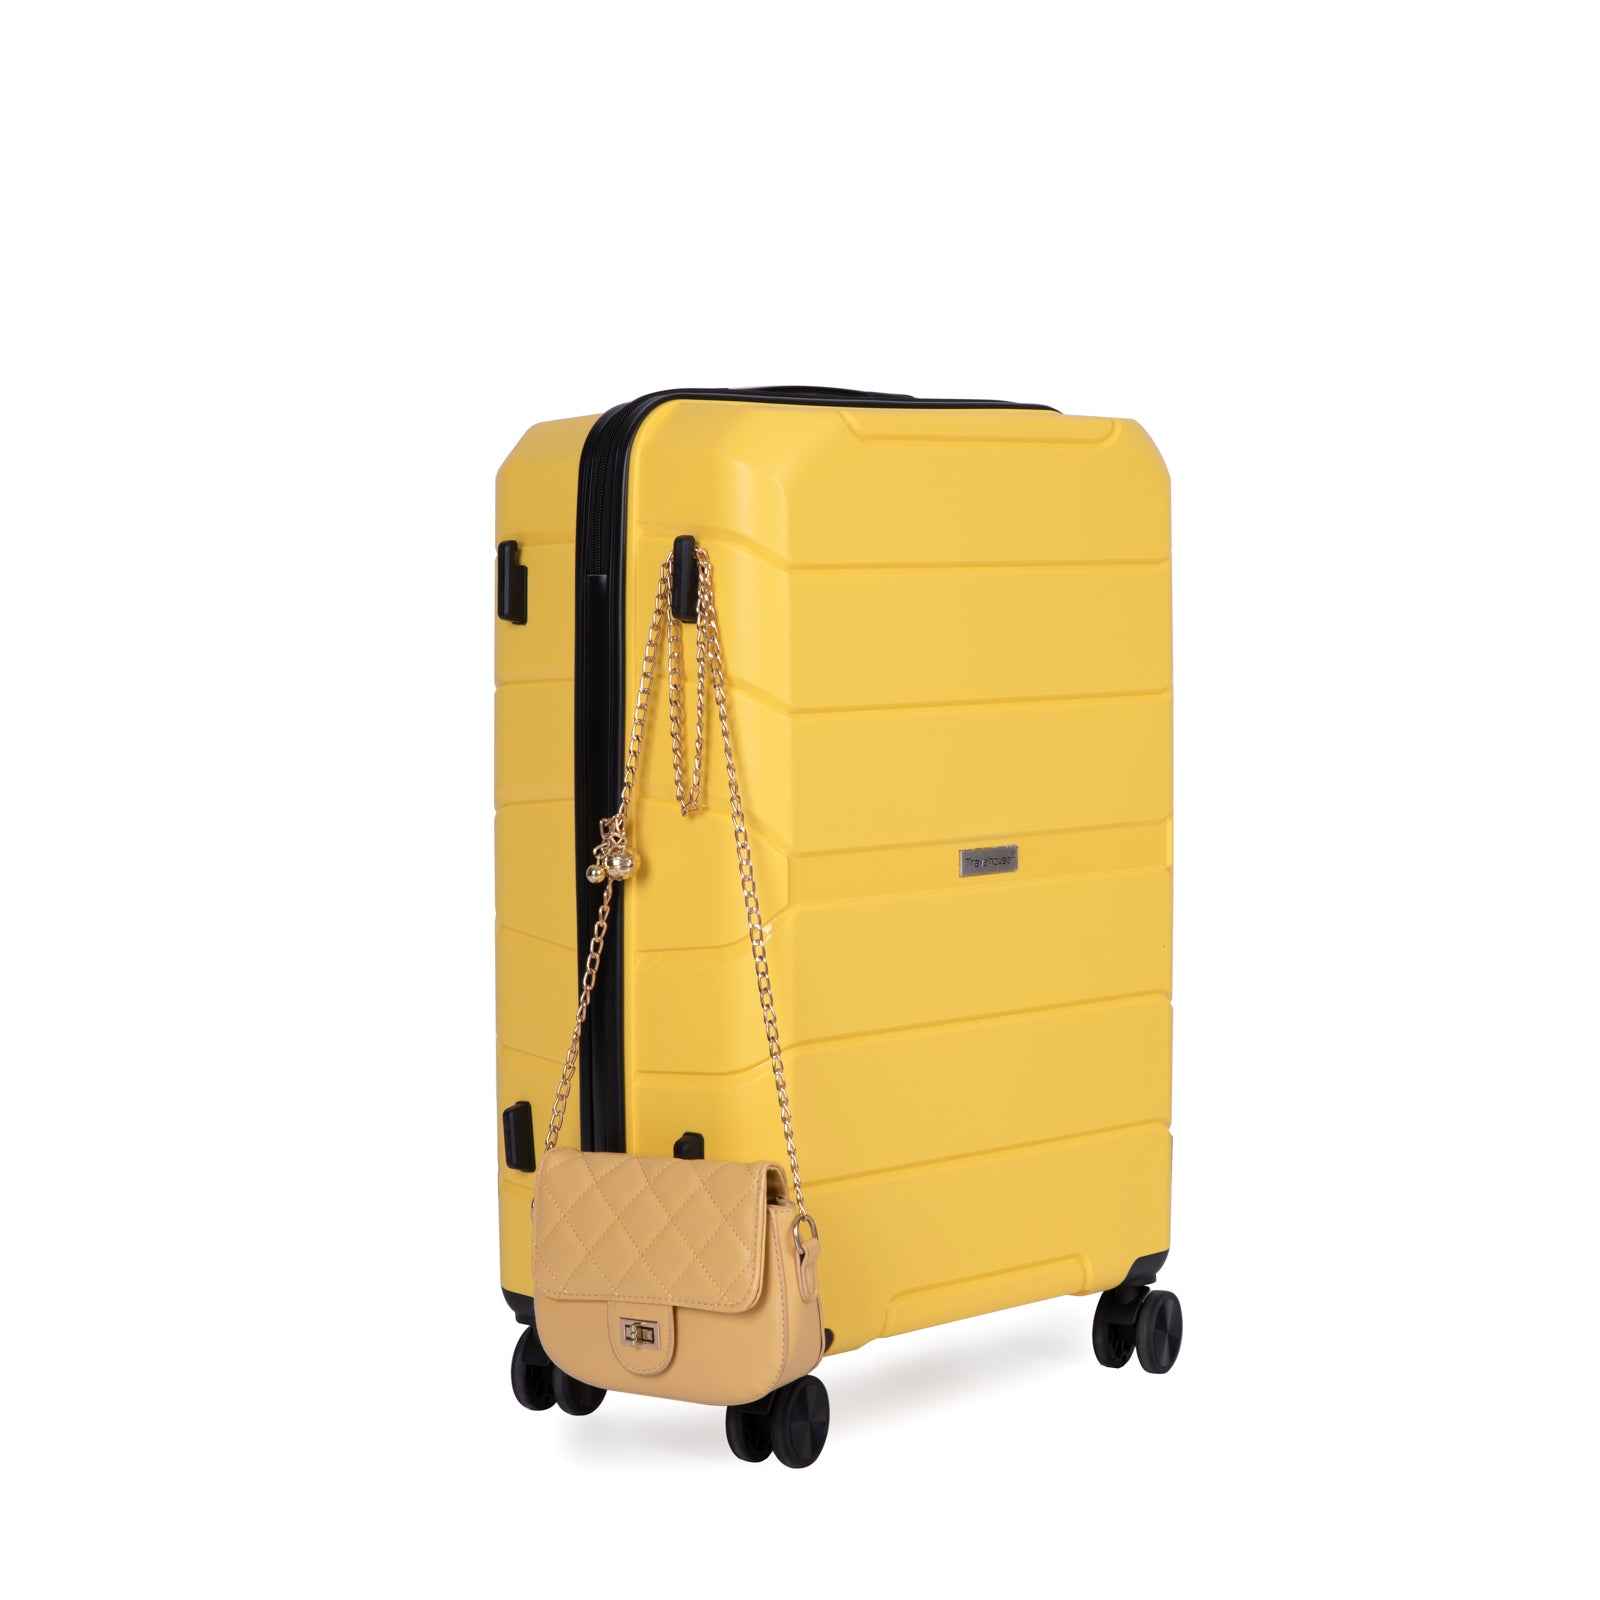 Hardshell Suitcase Spinner Wheels PP Luggage Sets yellow-polypropylene